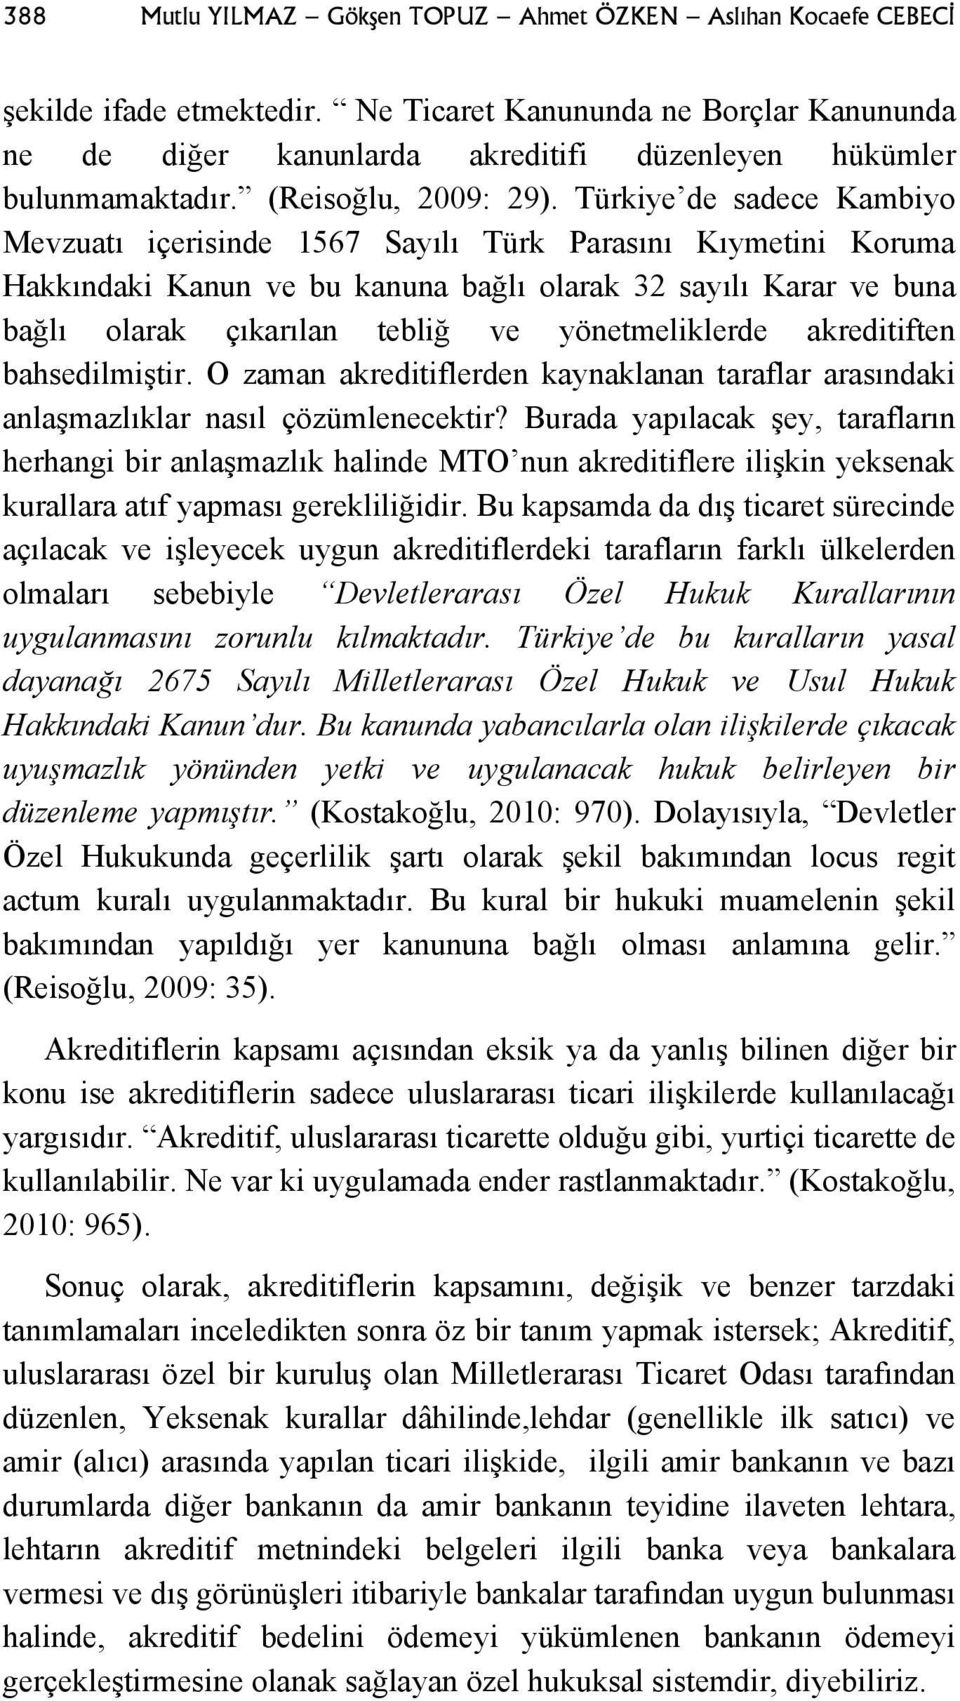 Türkiye de sadece Kambiyo Mevzuatı içerisinde 1567 Sayılı Türk Parasını Kıymetini Koruma Hakkındaki Kanun ve bu kanuna bağlı olarak 32 sayılı Karar ve buna bağlı olarak çıkarılan tebliğ ve